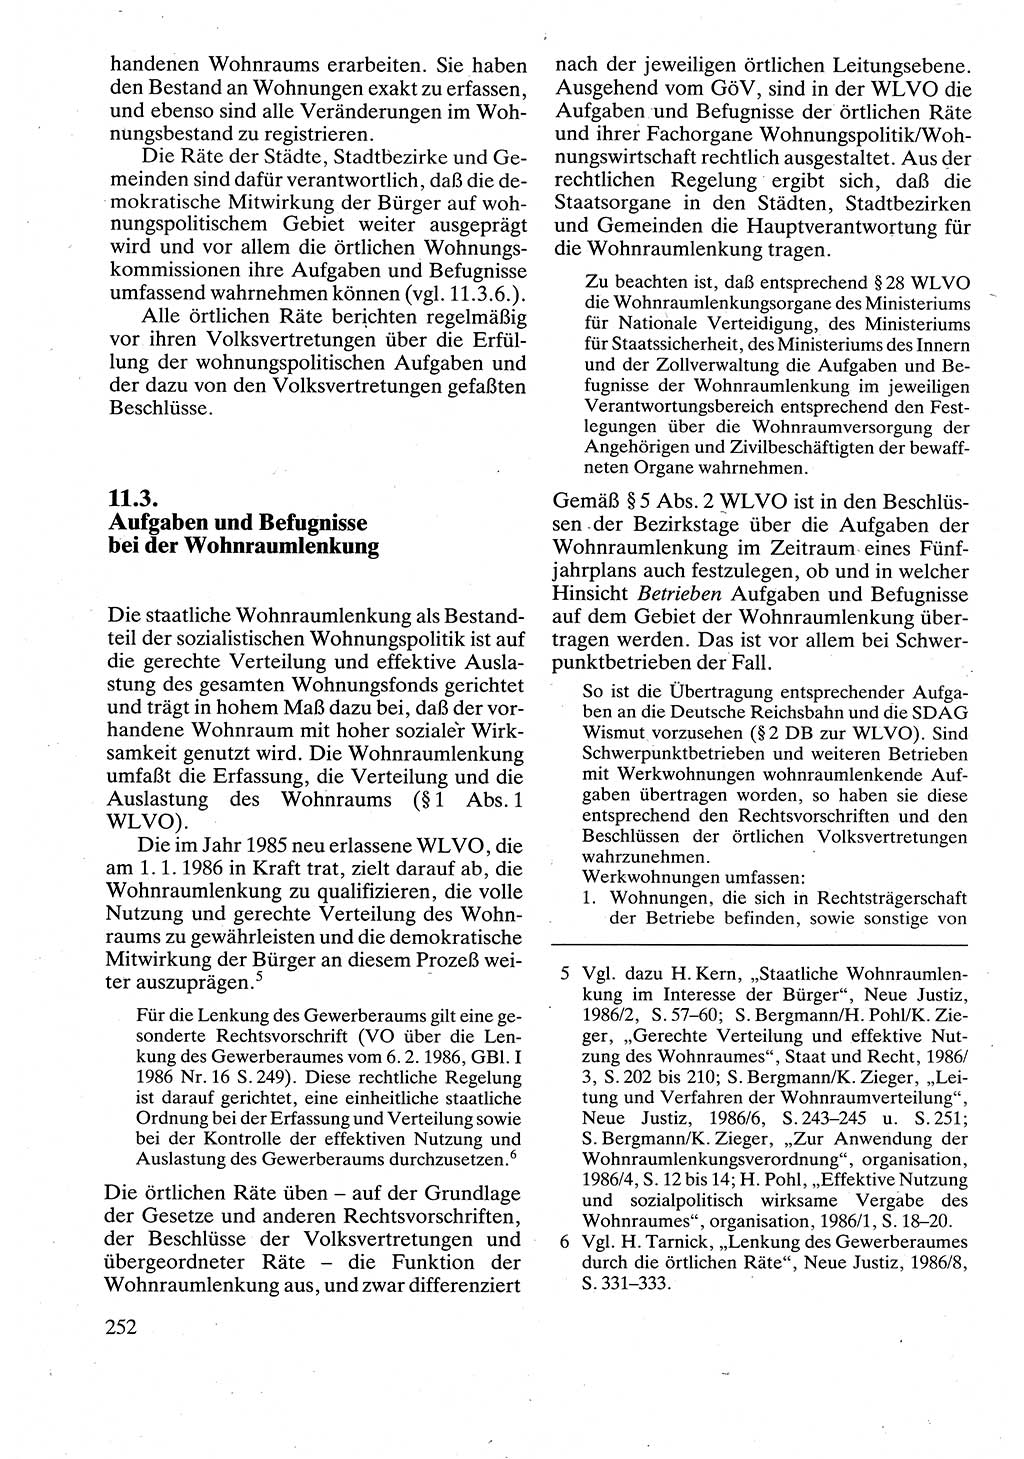 Verwaltungsrecht [Deutsche Demokratische Republik (DDR)], Lehrbuch 1988, Seite 252 (Verw.-R. DDR Lb. 1988, S. 252)